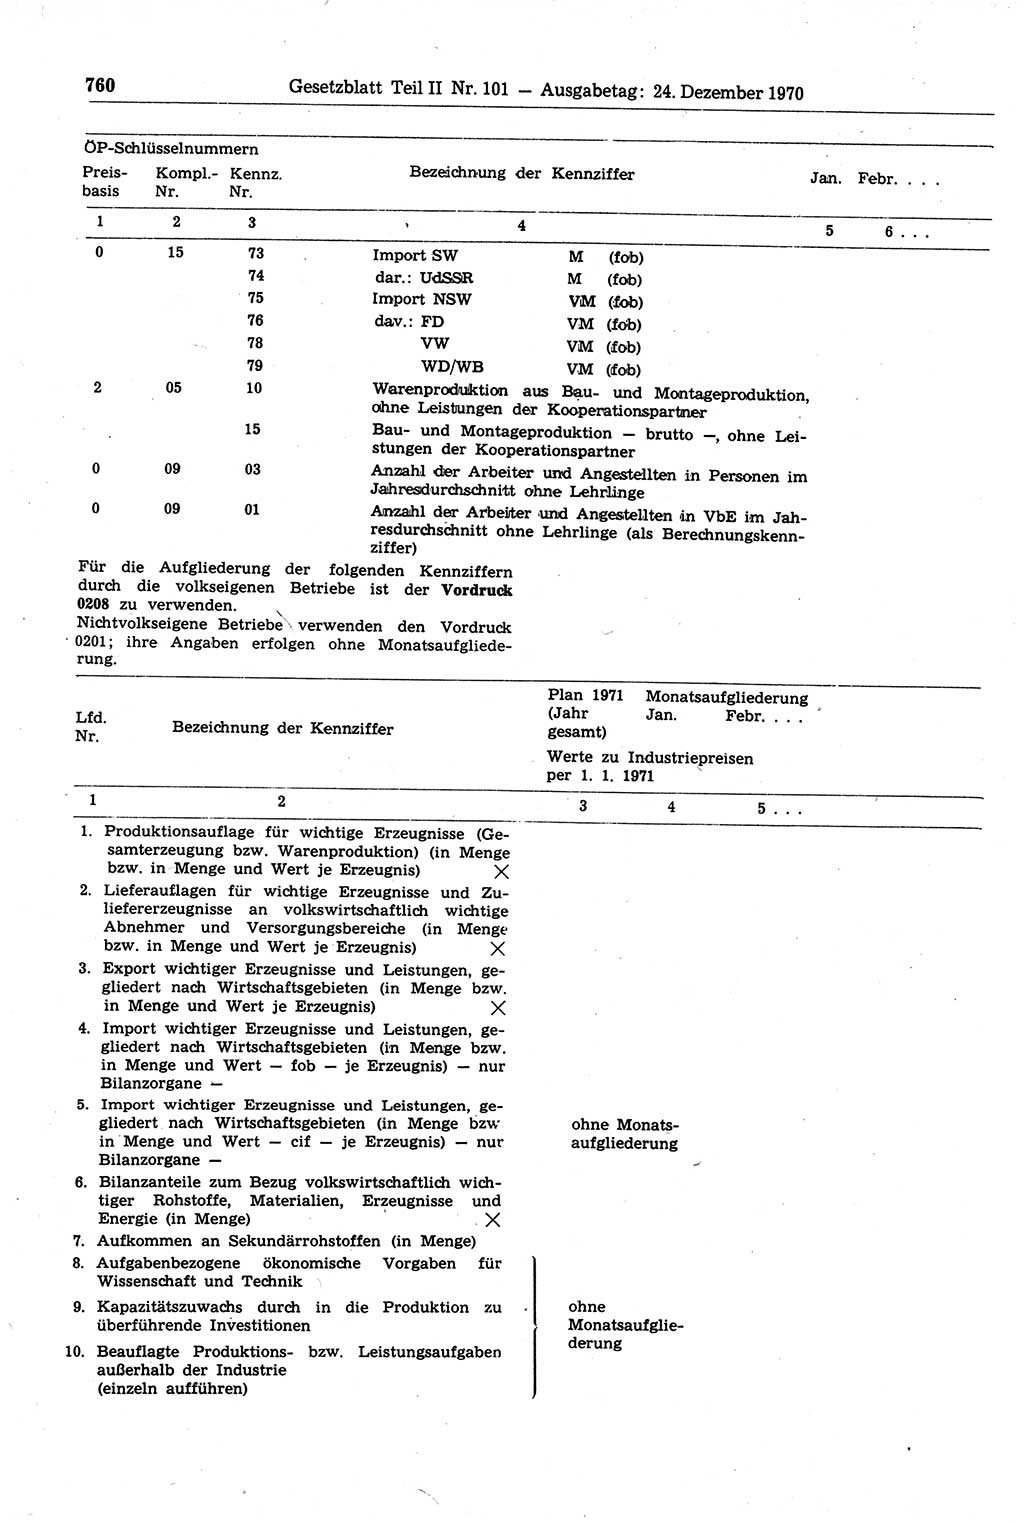 Gesetzblatt (GBl.) der Deutschen Demokratischen Republik (DDR) Teil ⅠⅠ 1970, Seite 760 (GBl. DDR ⅠⅠ 1970, S. 760)